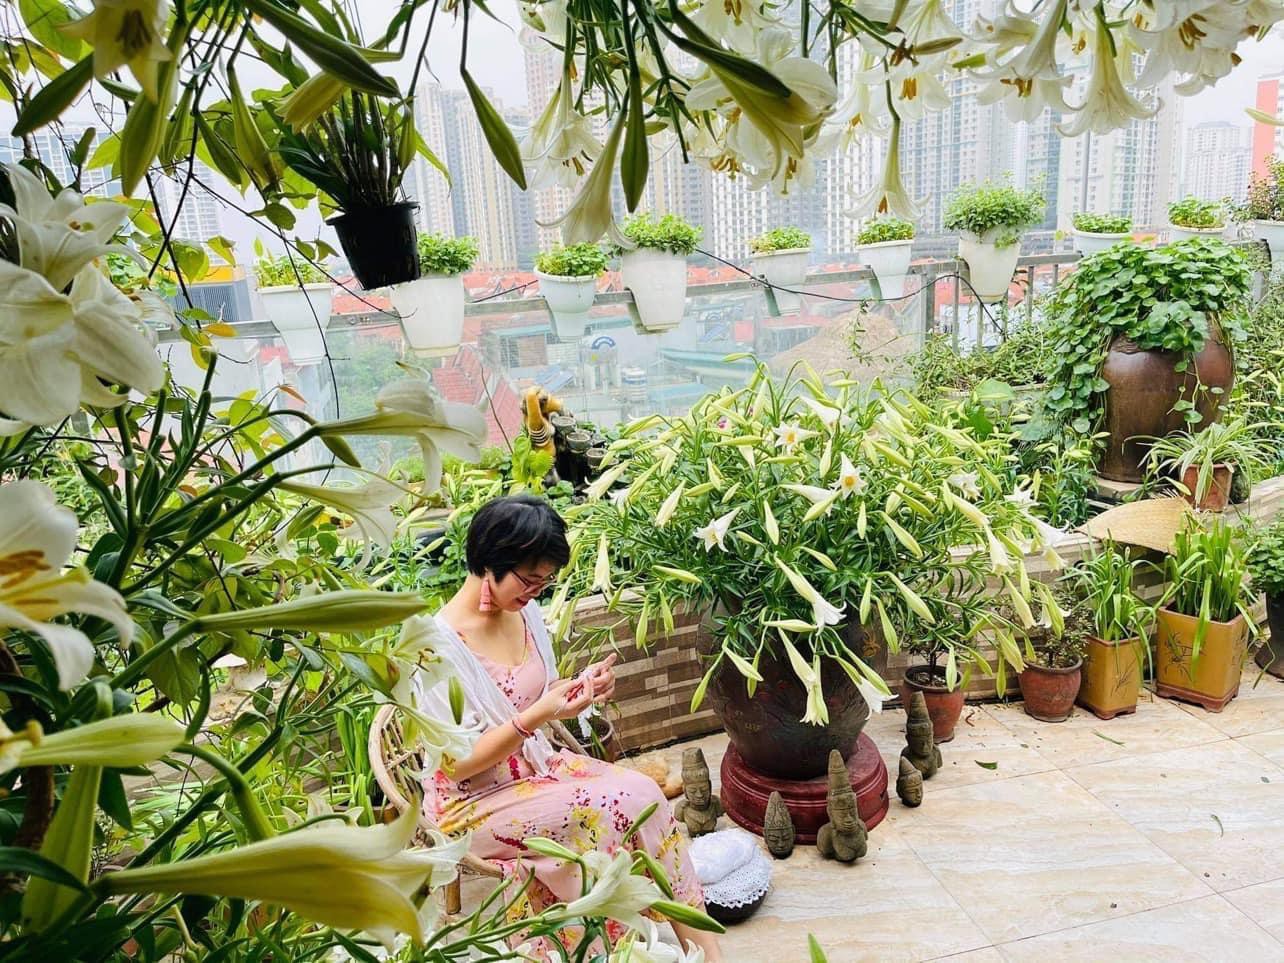 Hoa loa kèn vào mùa siêu rẻ, 'mãn nhãn' khu vườn nghìn bông của người phụ nữ Hà Nội 